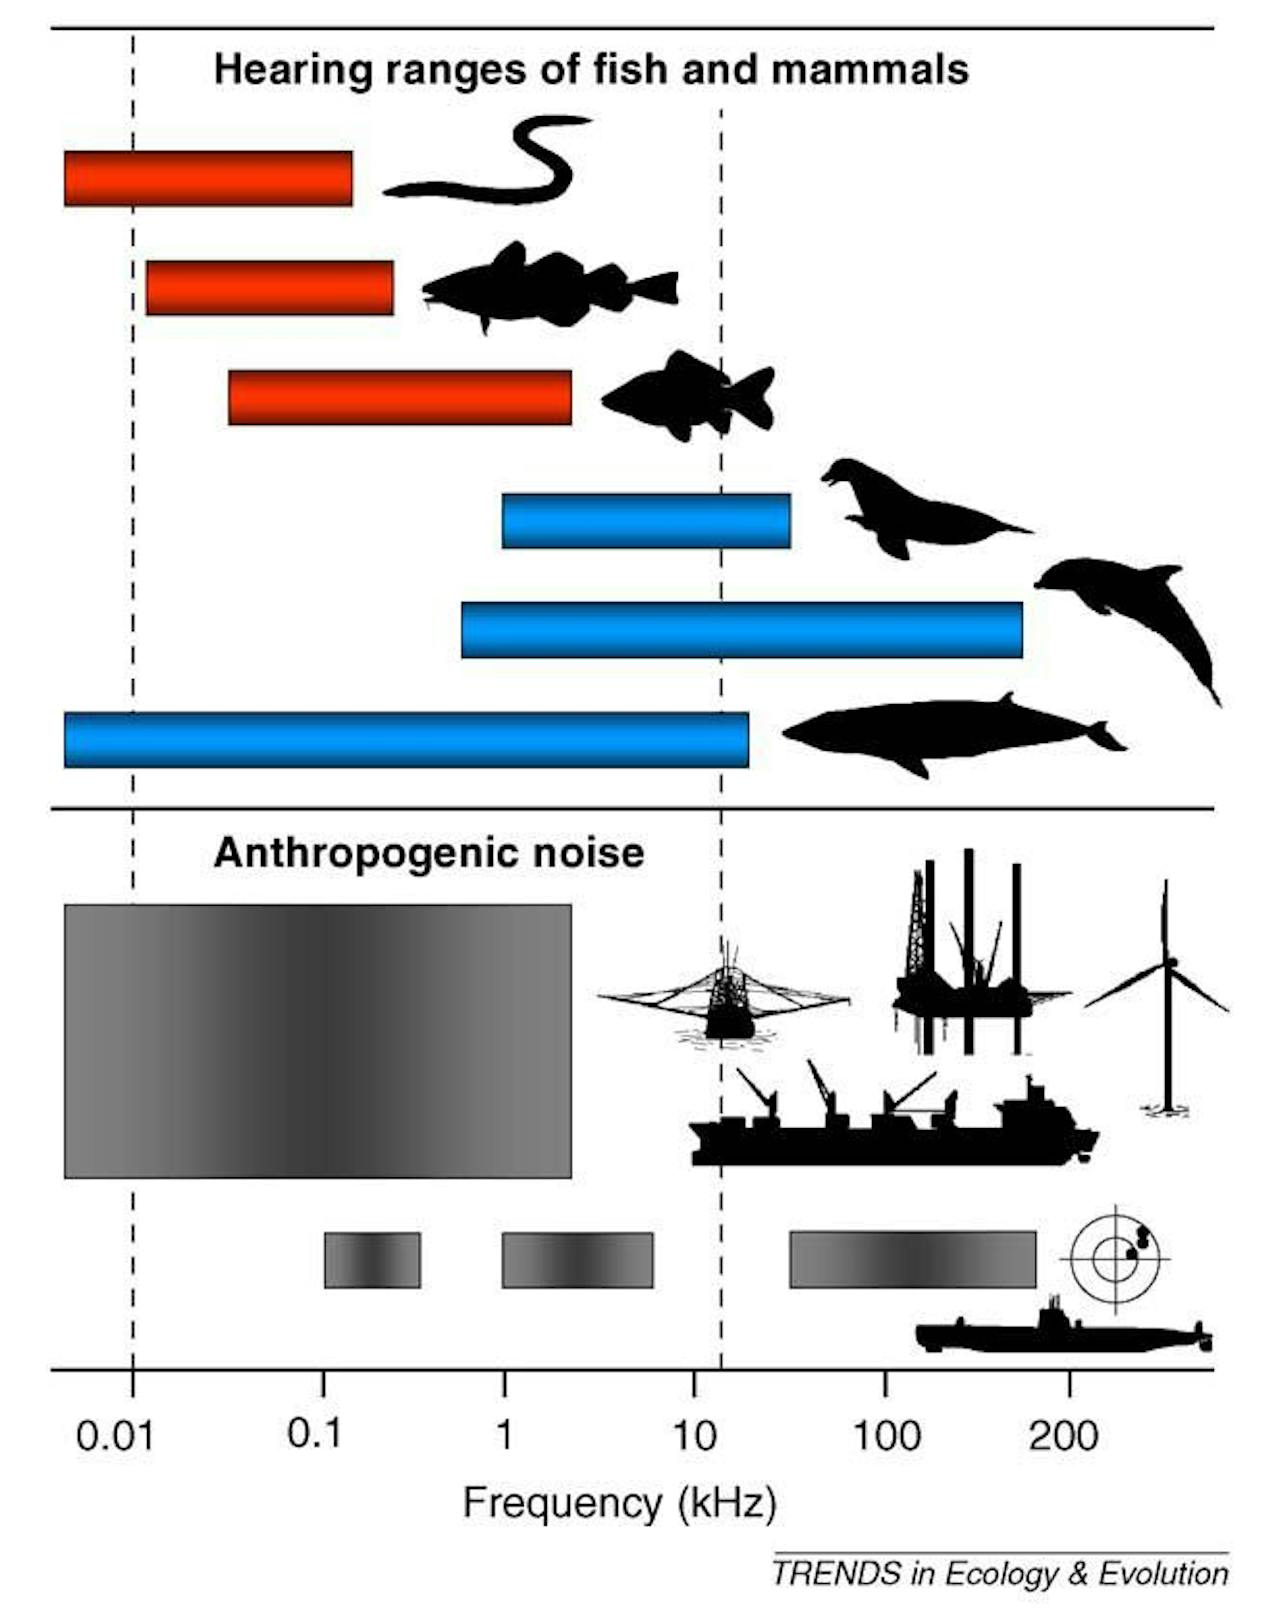 Een diagram met de gehoor range van verschillende soorten vissen. Er wordt een vergelijking gemaakt met antropogeen geluid.